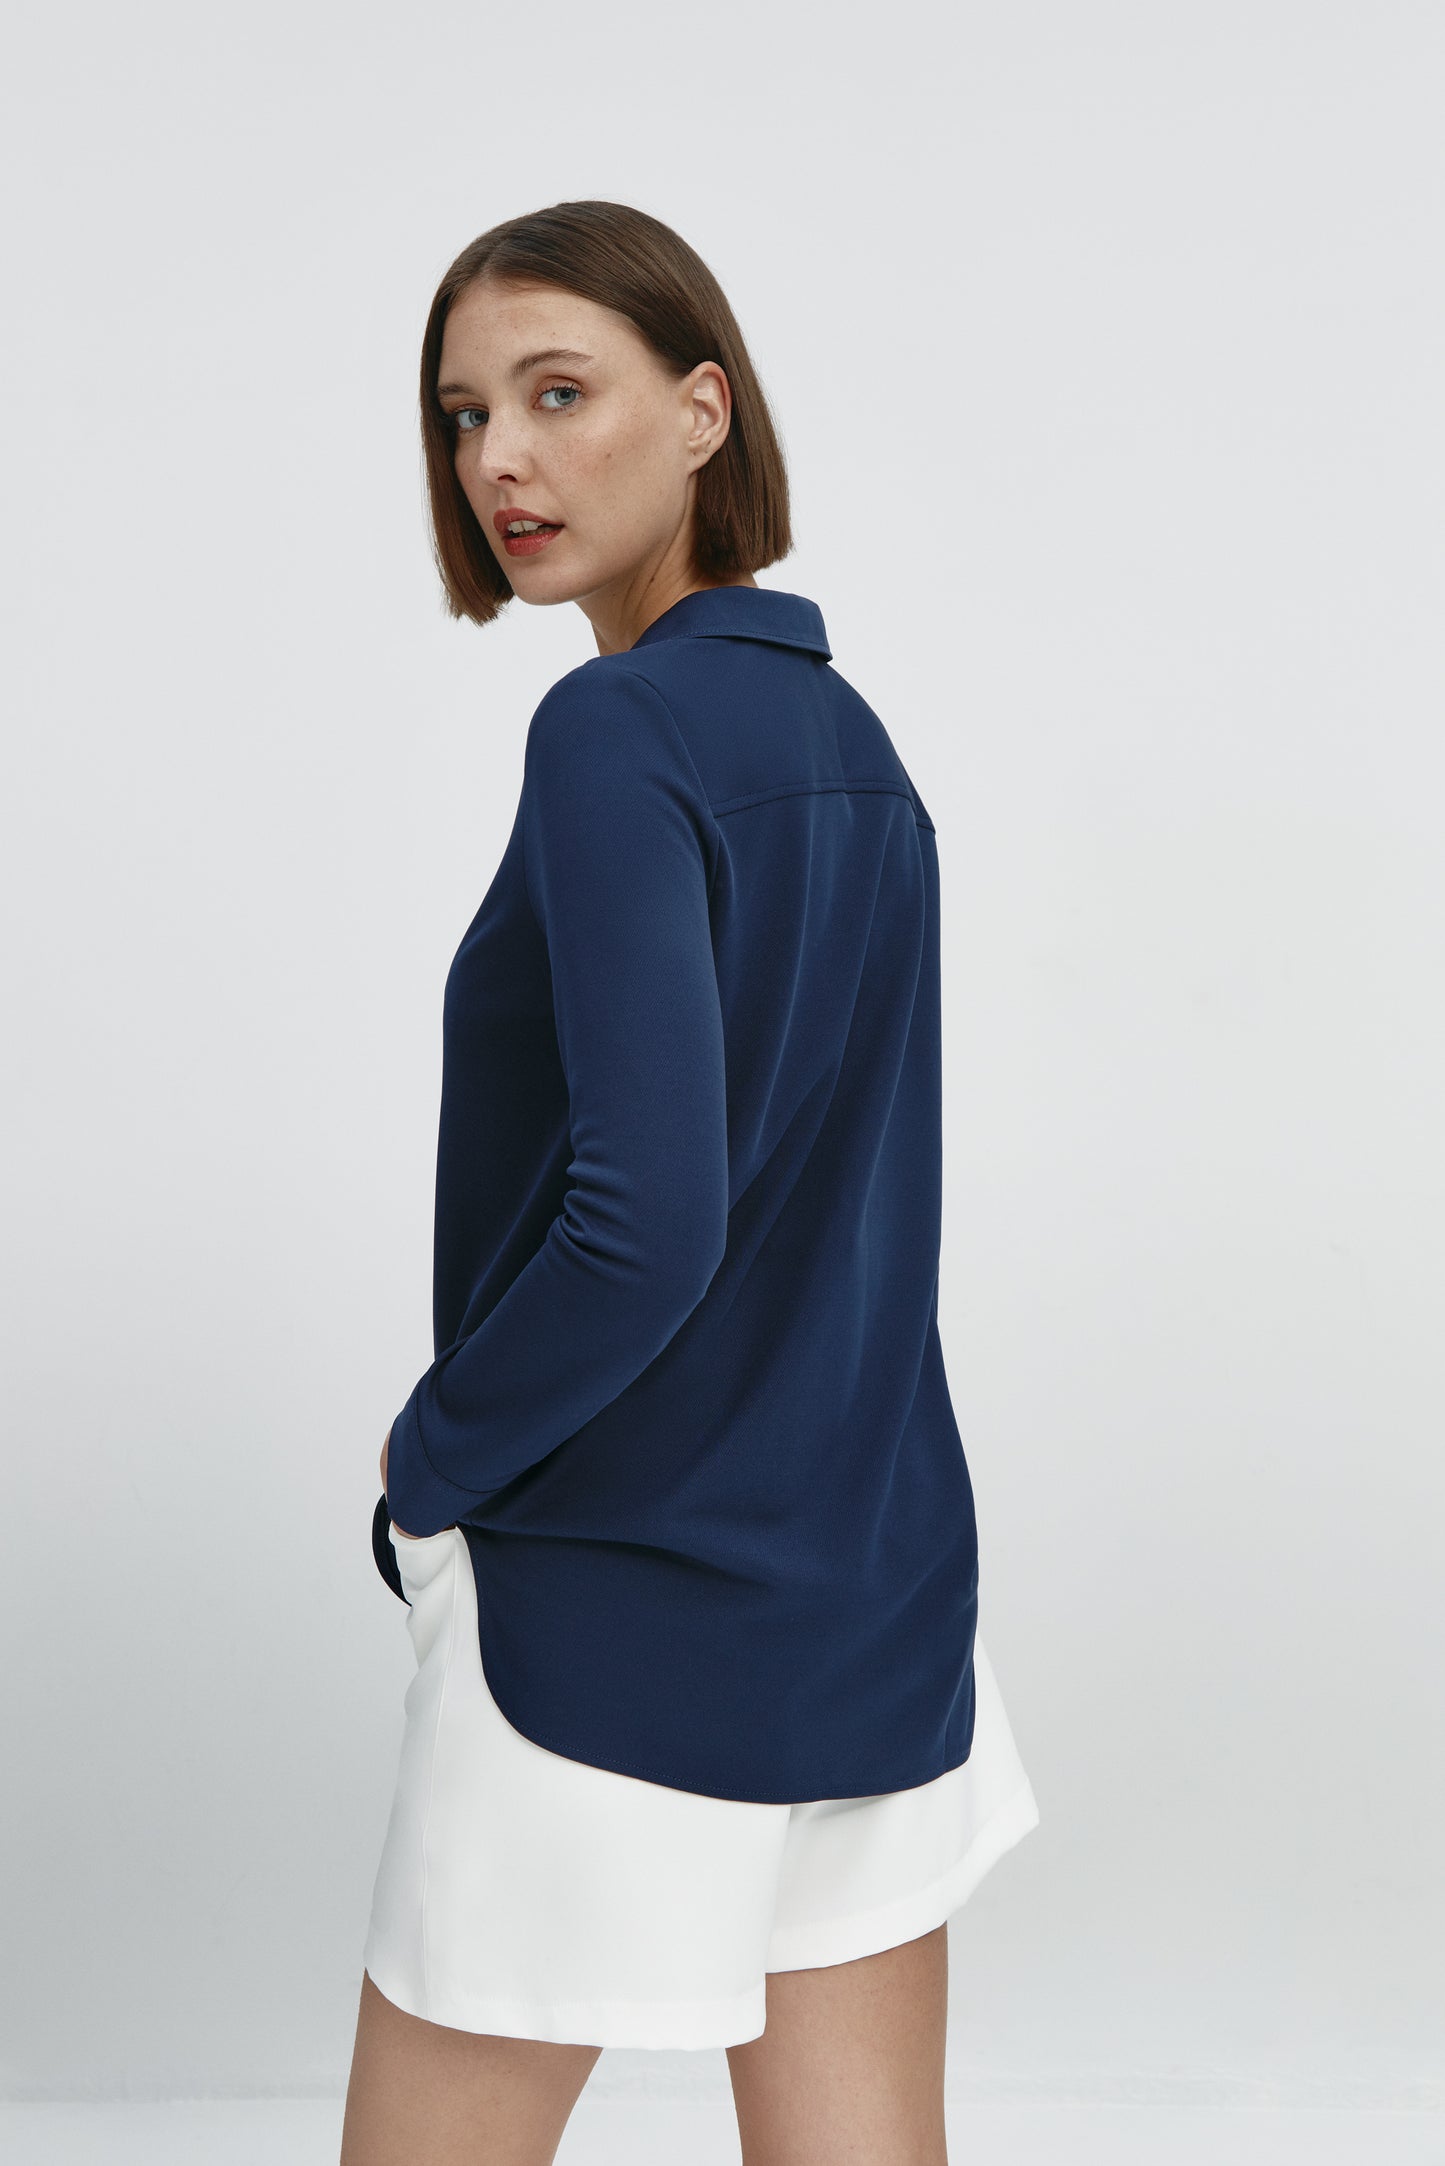 Camisa bowling de mujer azul marino de Sepiia, estilo y versatilidad en una prenda cómoda y resistente. Foto espalda